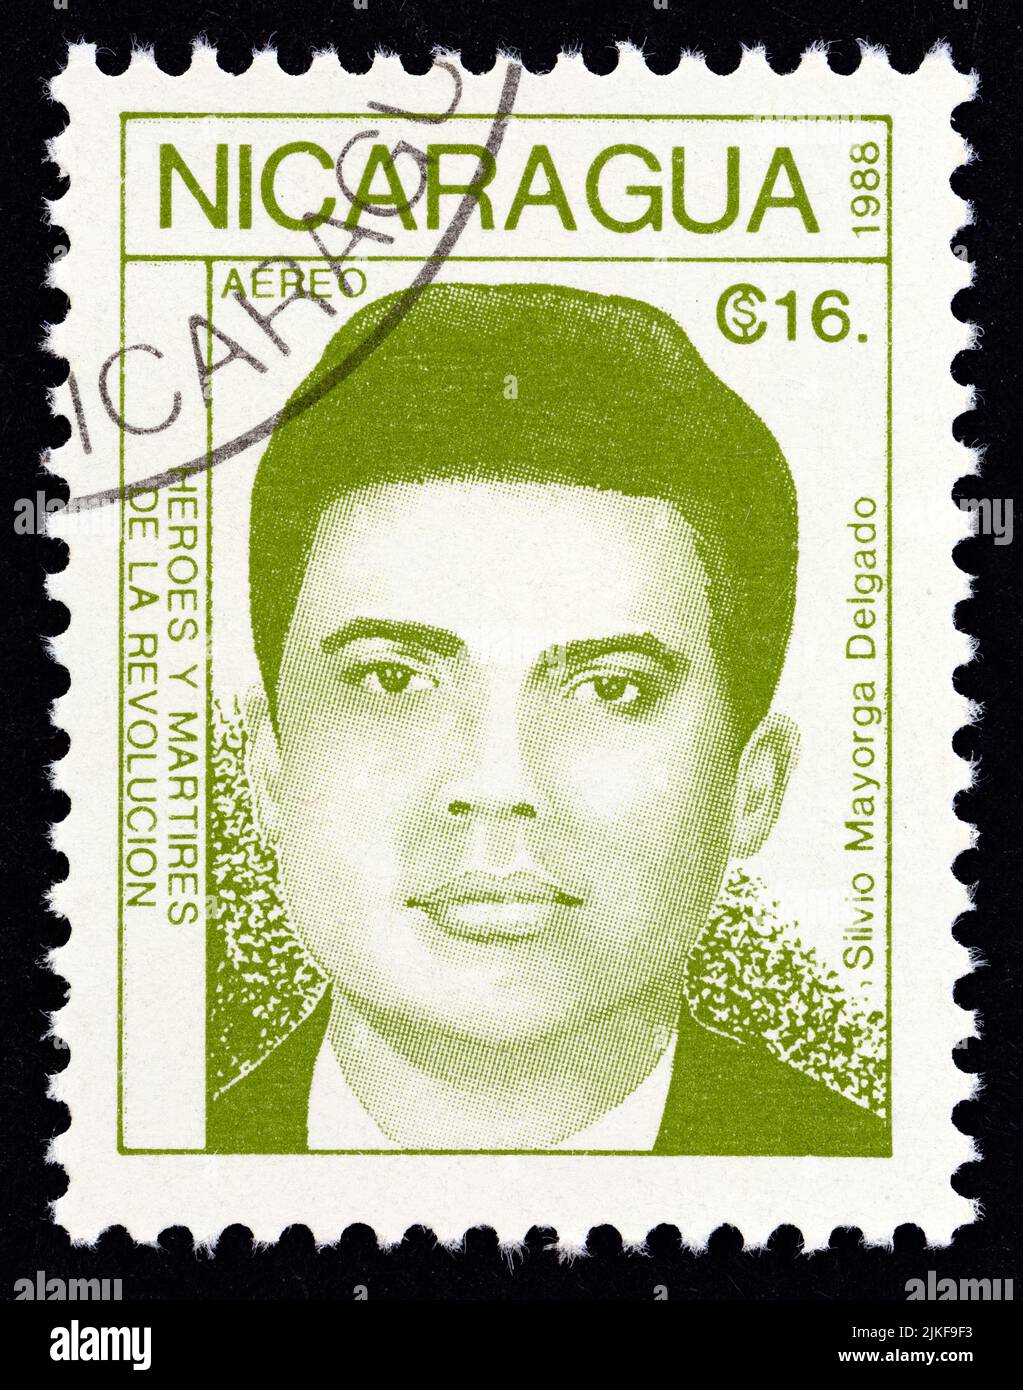 NICARAGUA - UM 1988: Eine in Nicaragua gedruckte Briefmarke aus der Ausgabe 'revolutionäre' zeigt Silvio Mayorga Delgado, um 1988. Stockfoto